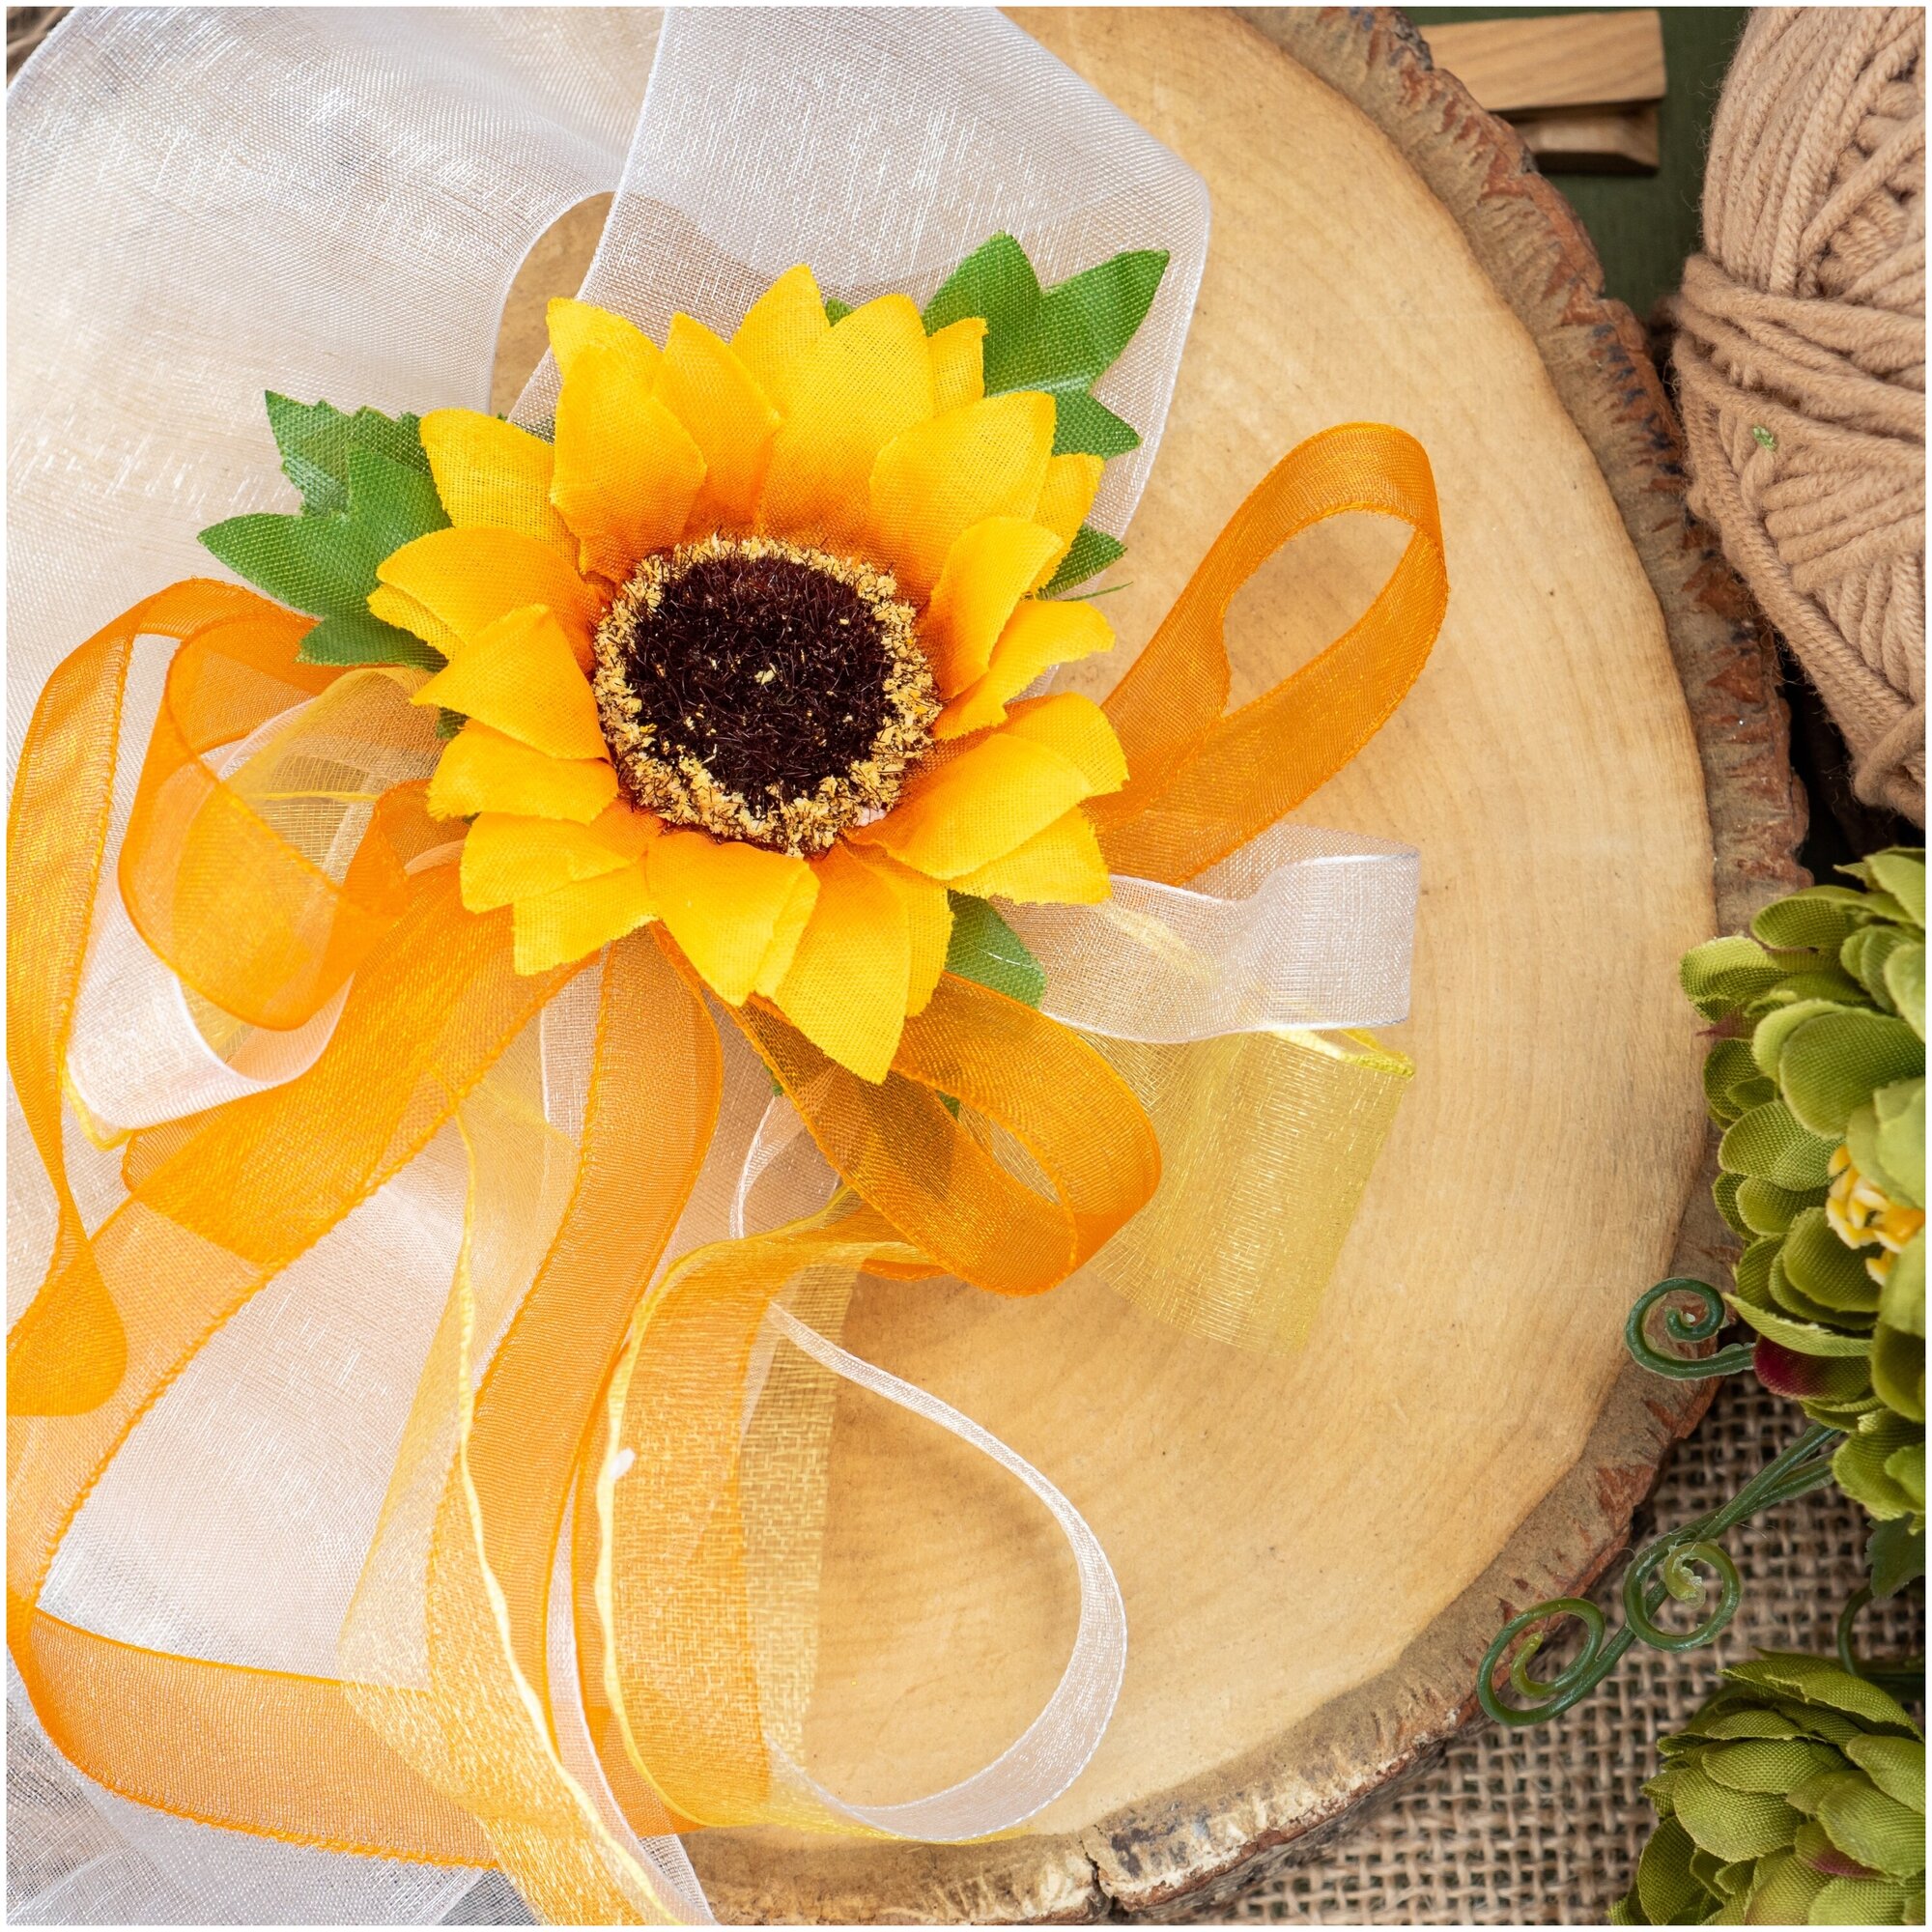 Веселый браслет для свидетельницы невесты на свадьбу "Подсолнух" из белых и оранжевых ленточек органзы, с искусственным цветком желтого цвета